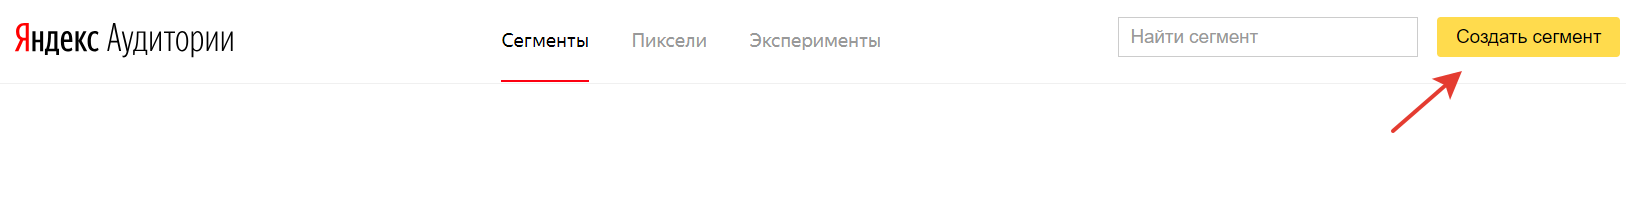 Сегмент в Яндекс Аудиториях